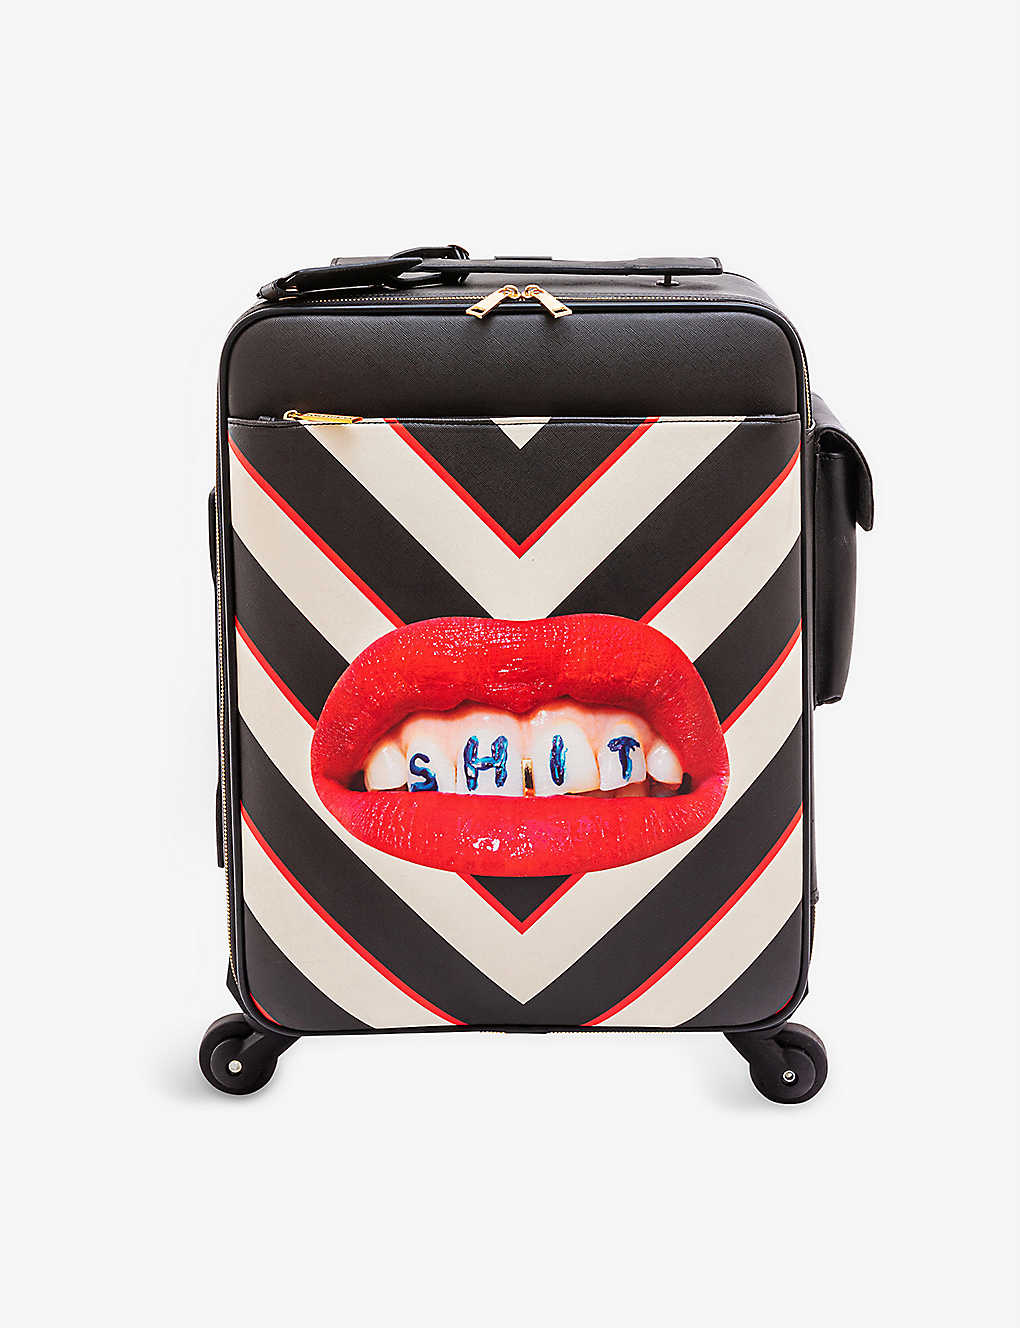 Seletti Wears Toiletpaper Lipstick-print Striped Faux-leather Suitcase In Schwarz